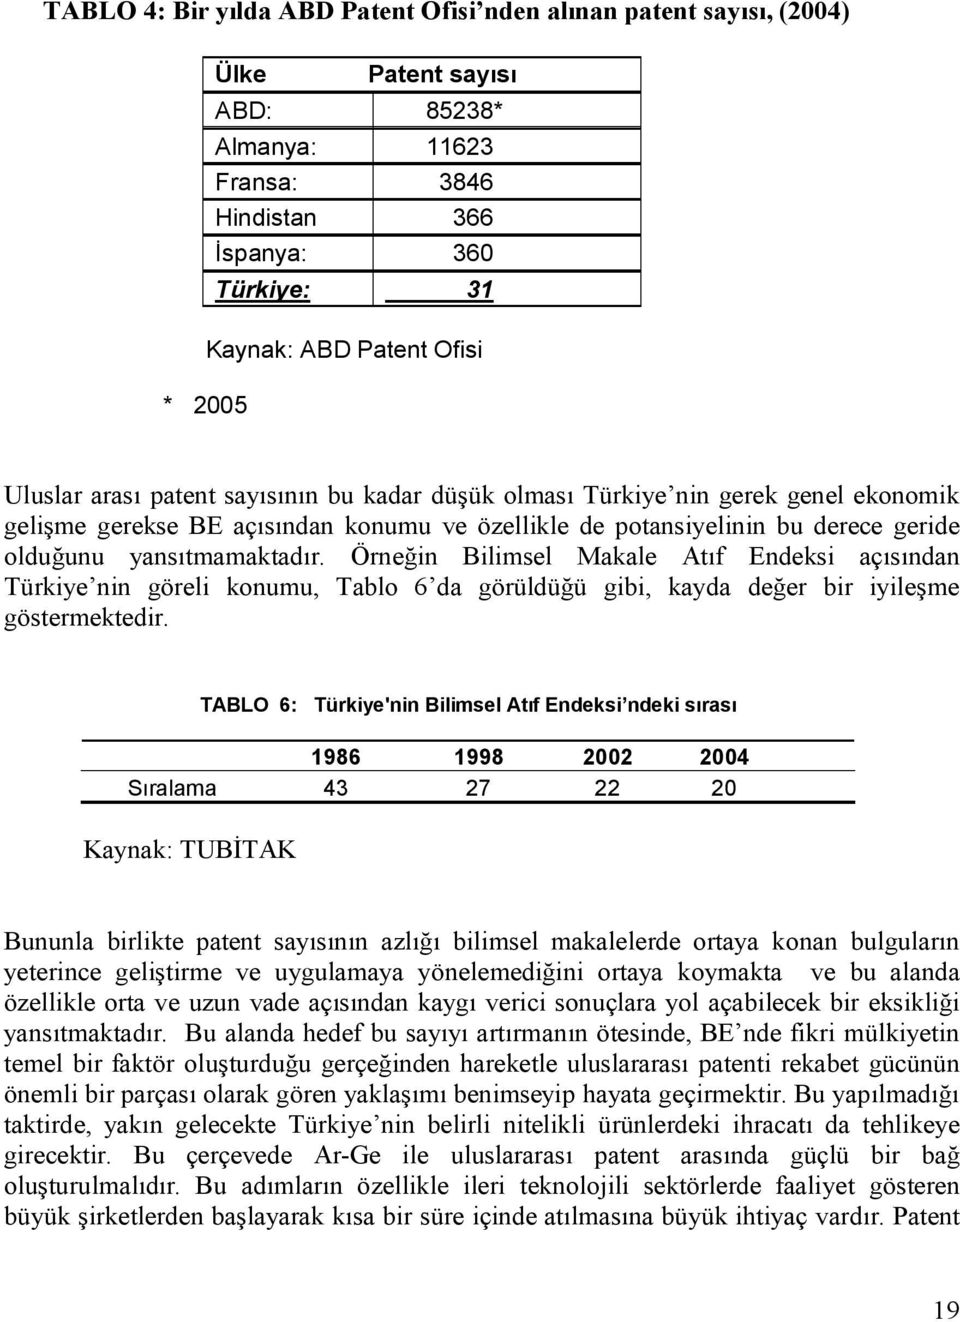 Örneğin Bilimsel Makale Atıf Endeksi açısından Türkiye nin göreli konumu, Tablo 6 da görüldüğü gibi, kayda değer bir iyileşme göstermektedir.